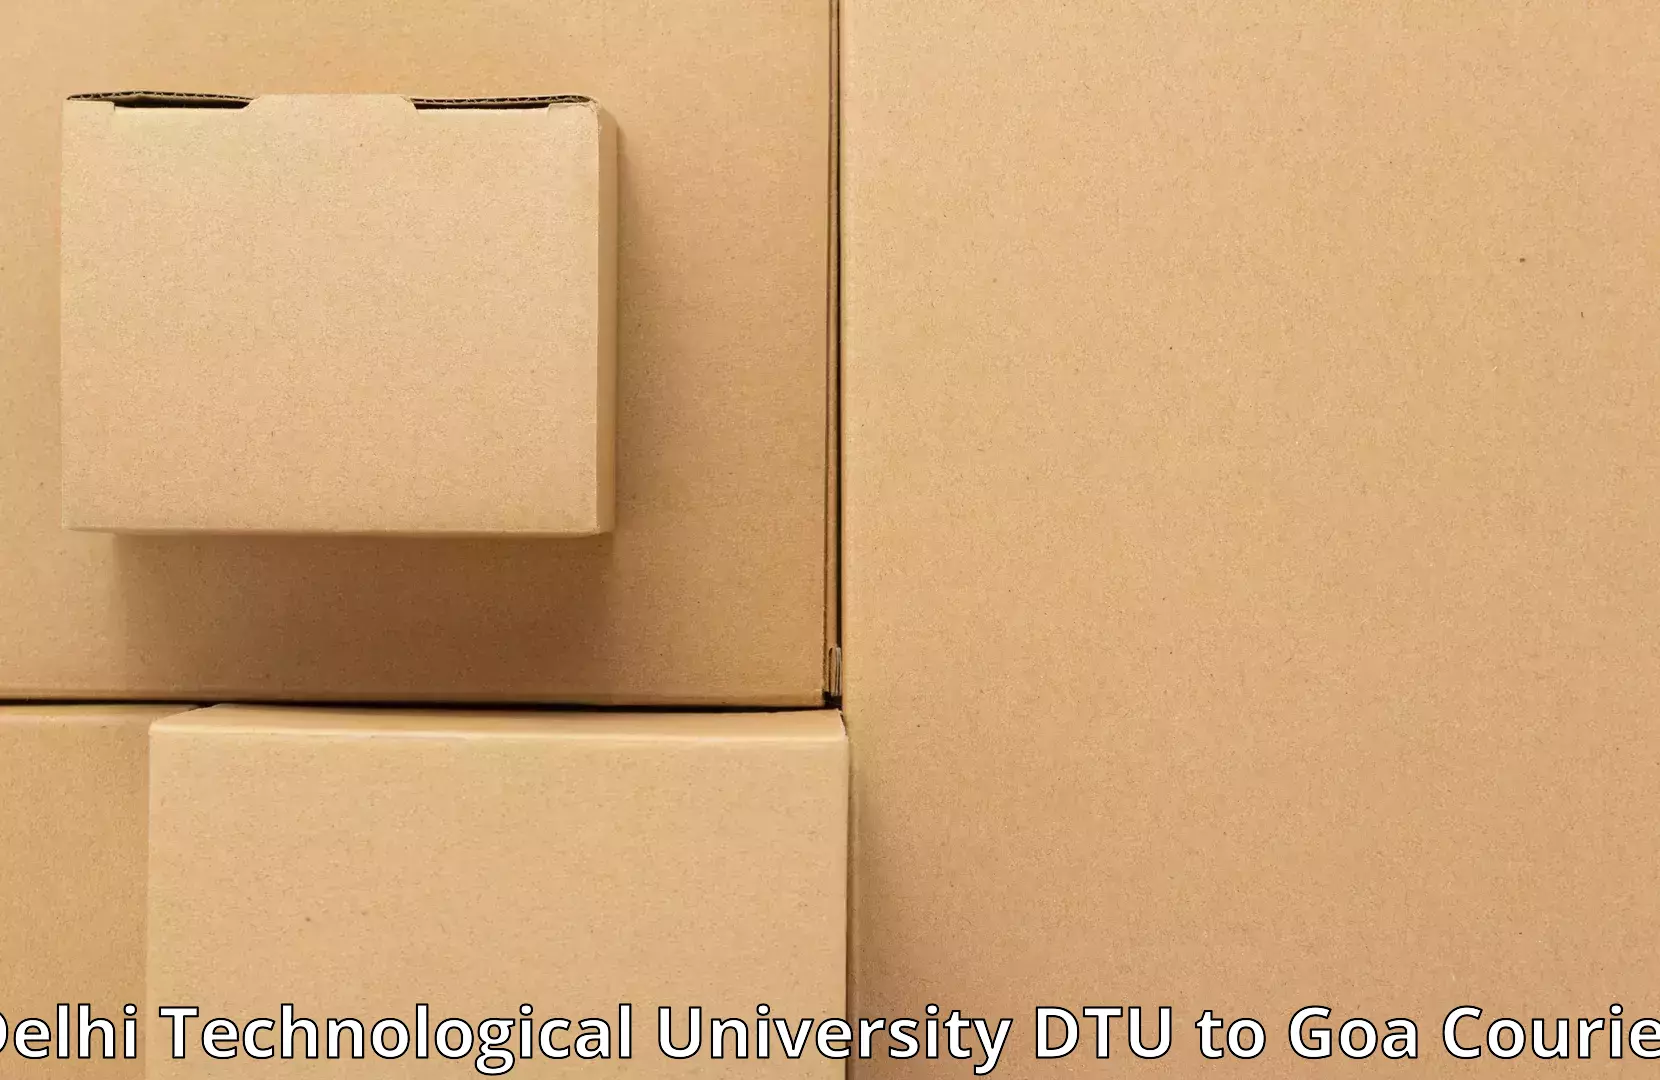 Furniture delivery service Delhi Technological University DTU to Sanvordem